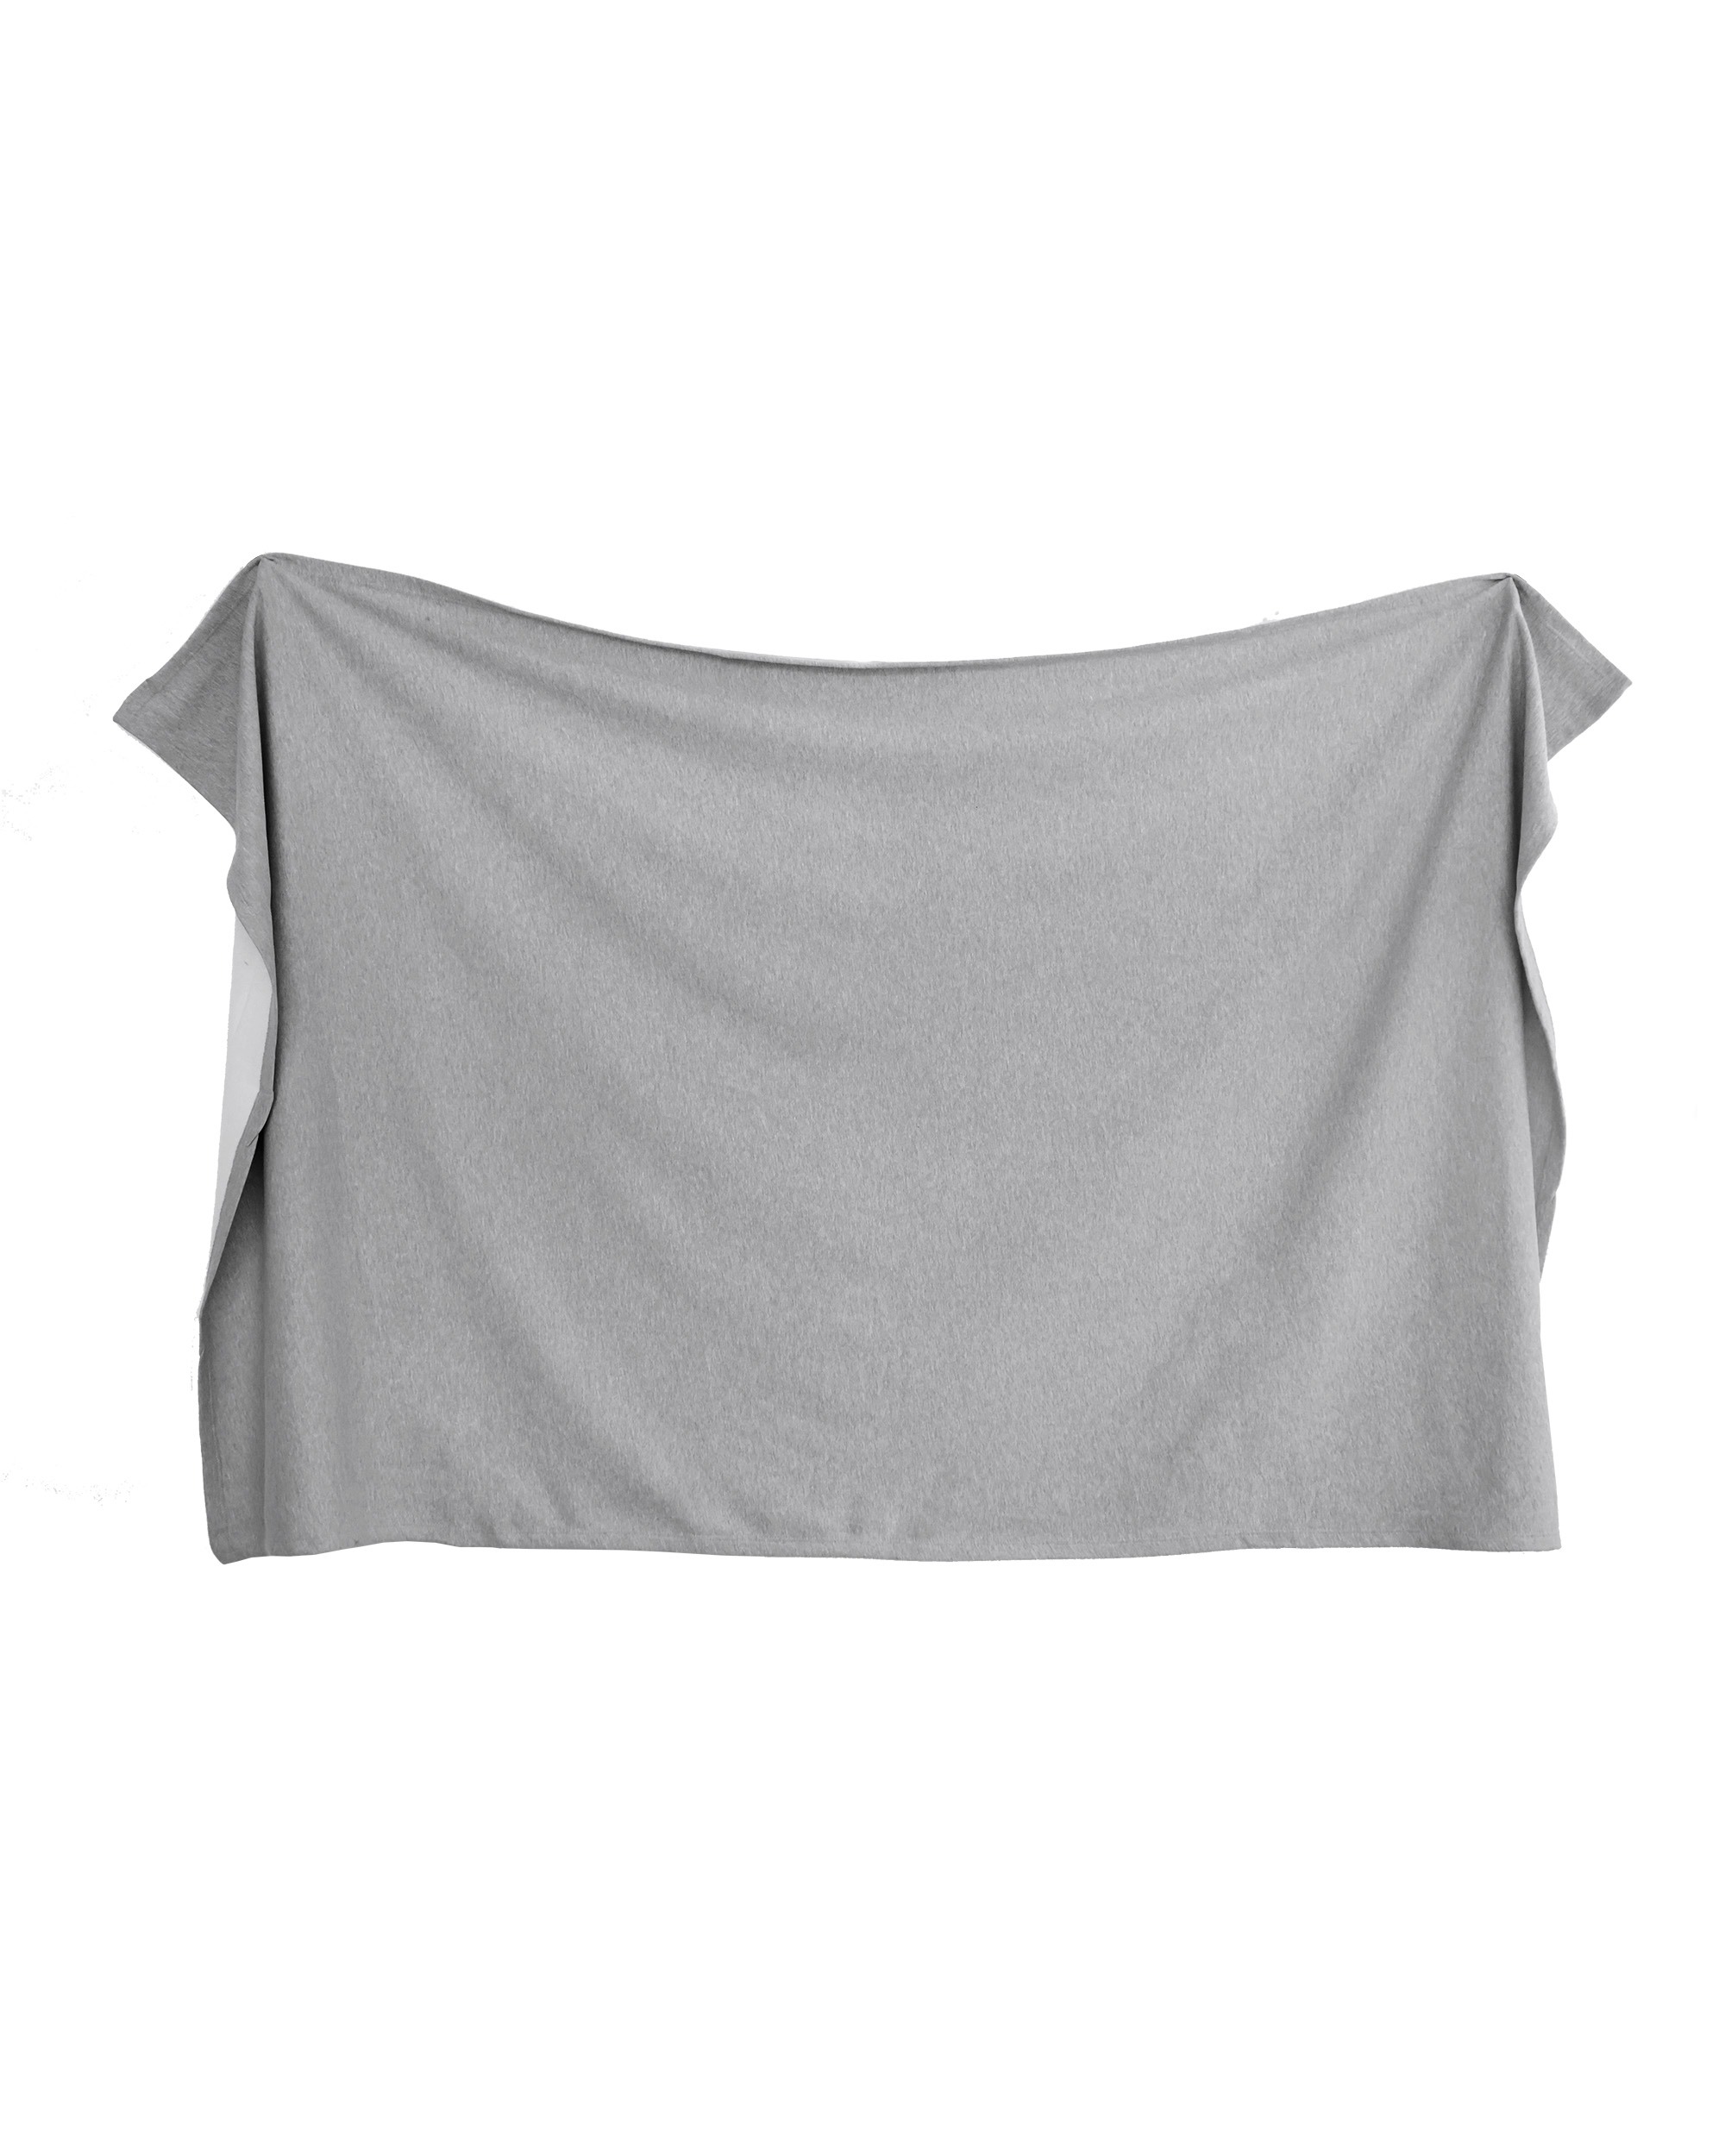 Enza® 61079 Oversized 11 oz. Sweatshirt Blanket